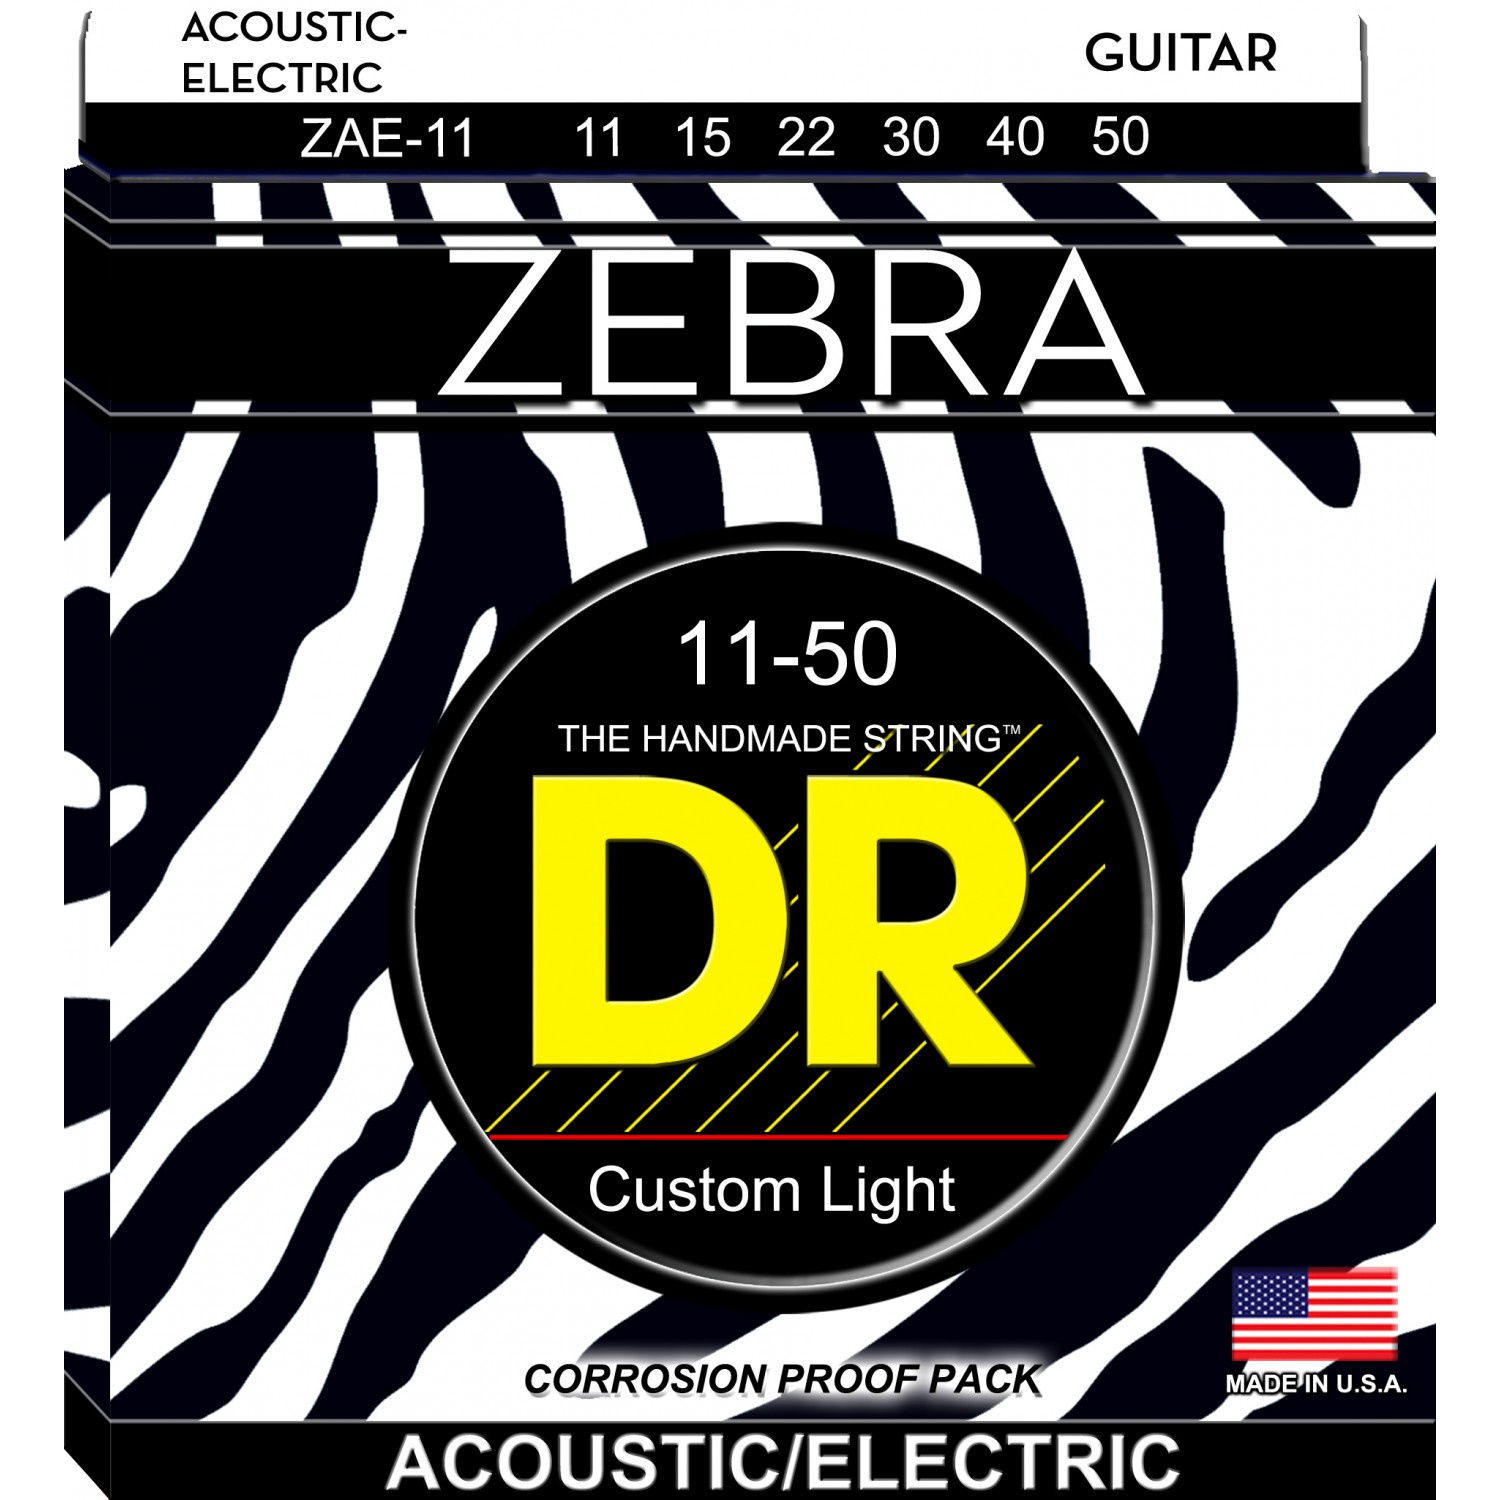 DR ZEBRA - struny do gitary akustycznej/elektrycznej Set, Medium Light, .011-.050